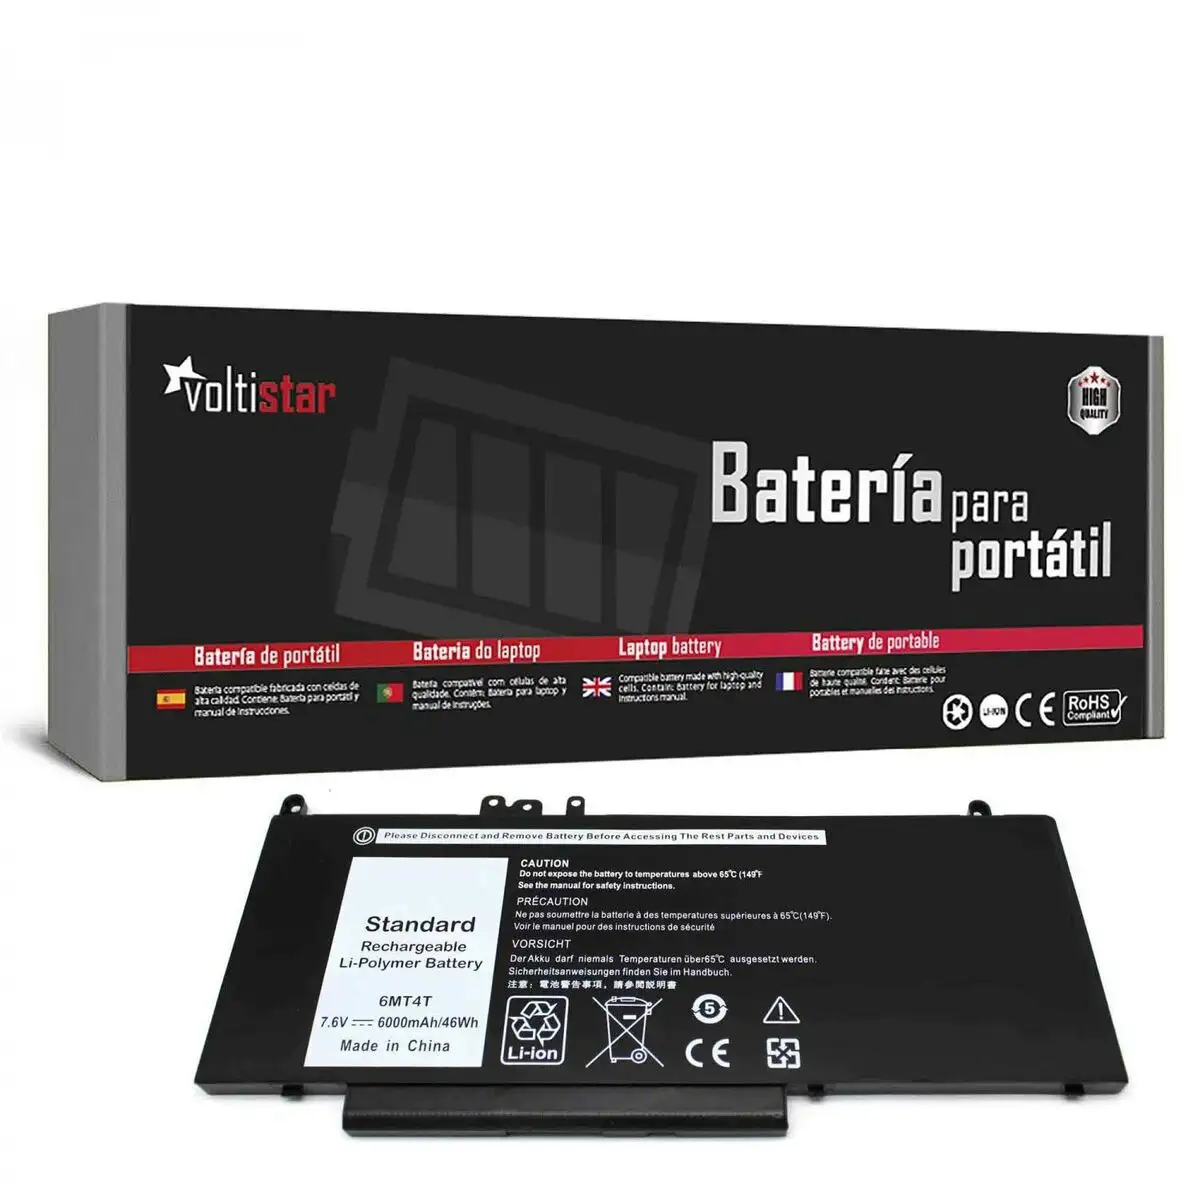 Batterie pour ordinateur portable voltistar bat2180 noir 6000 mah 7 6 v_8808. DIAYTAR SENEGAL - Votre Plateforme Shopping de Confiance. Naviguez à travers nos rayons et choisissez des produits fiables qui répondent à vos besoins quotidiens.